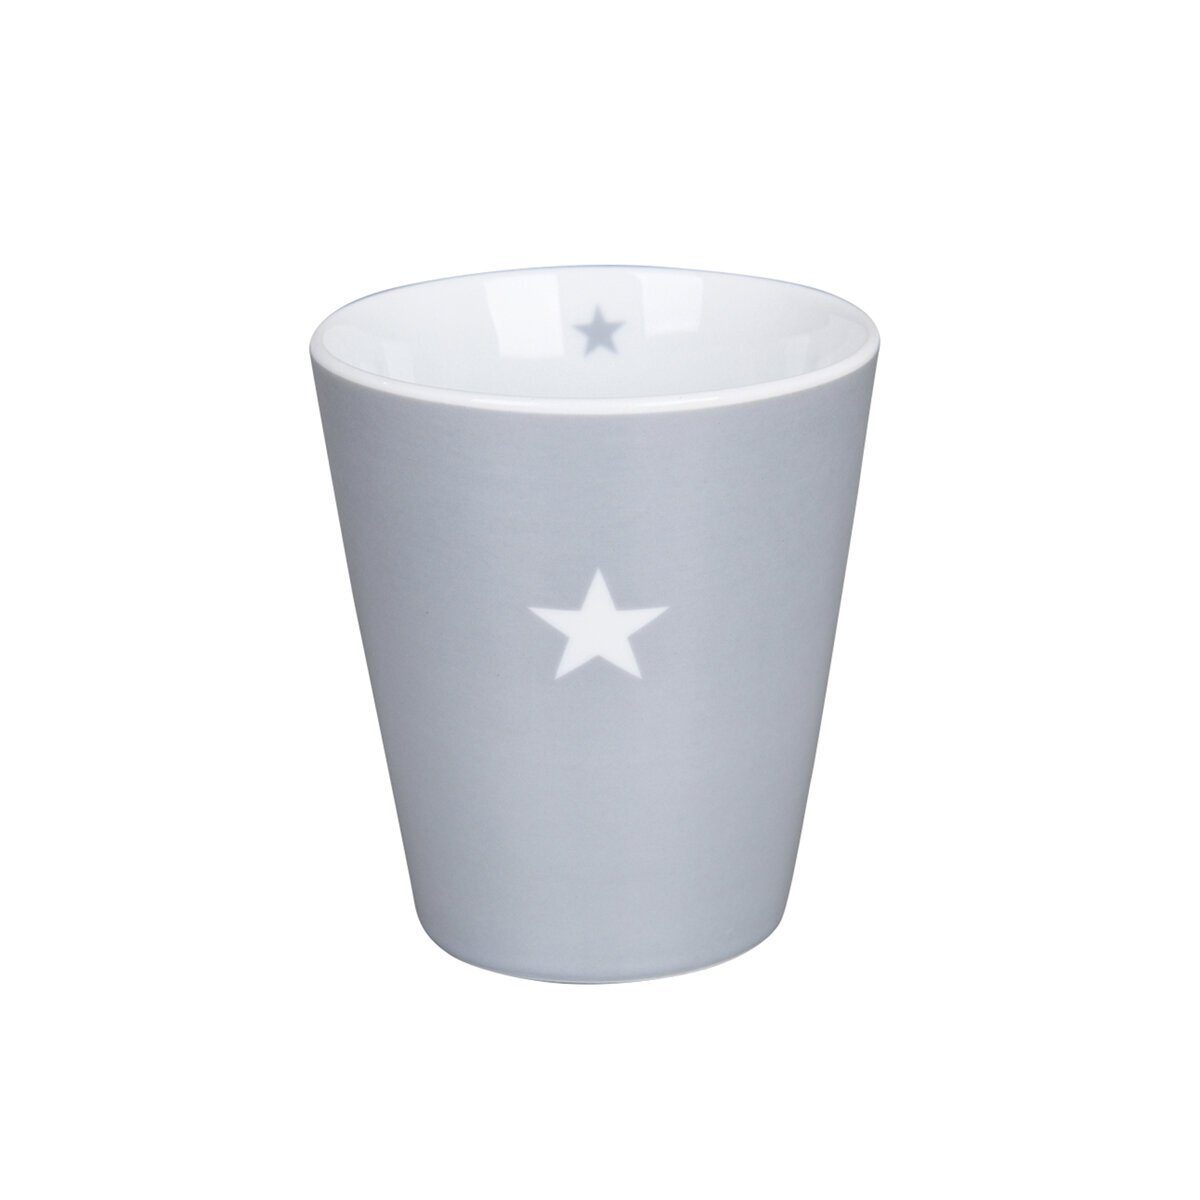 begrenzte Zeit verfügbar Krasilnikoff Becher Happy Mug grau Colourful Porzellan Star